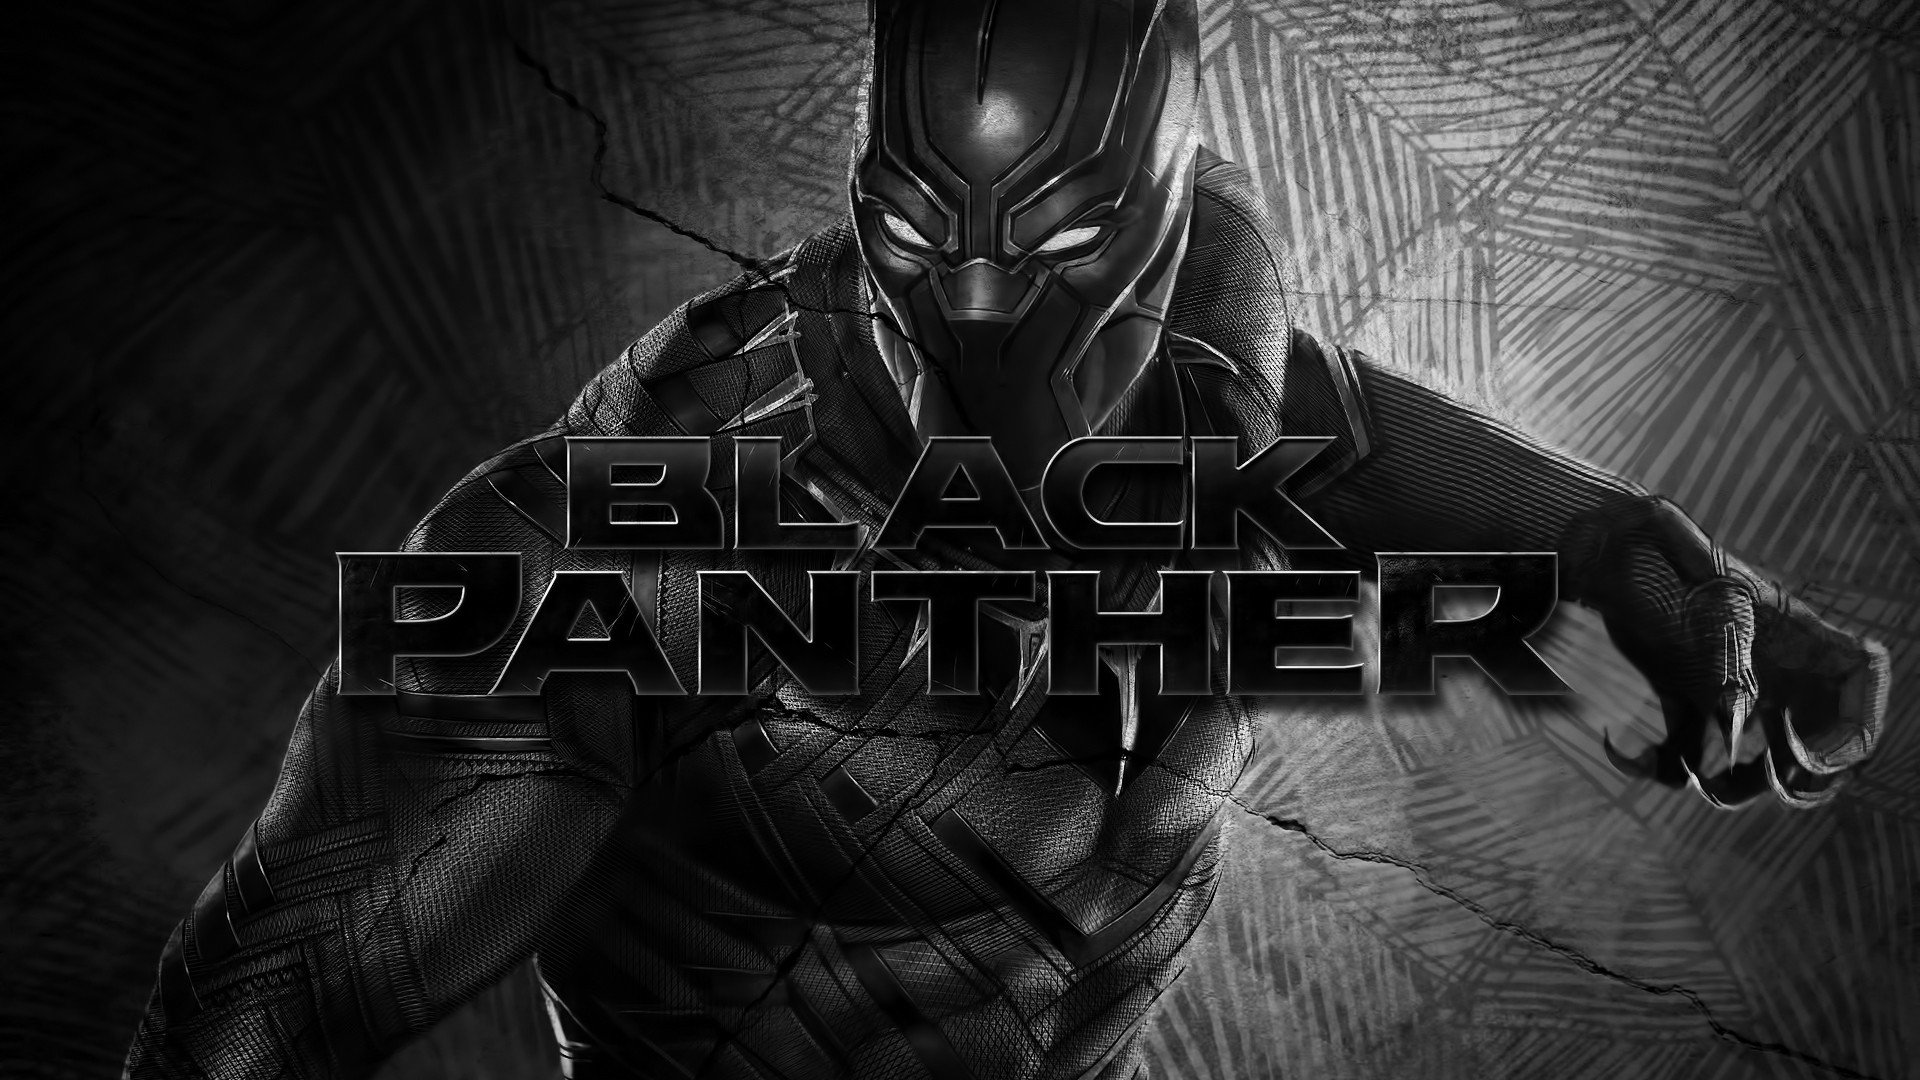 schwarzer panther hd wallpaper,action adventure spiel,computerspiel,batman,erfundener charakter,spiele